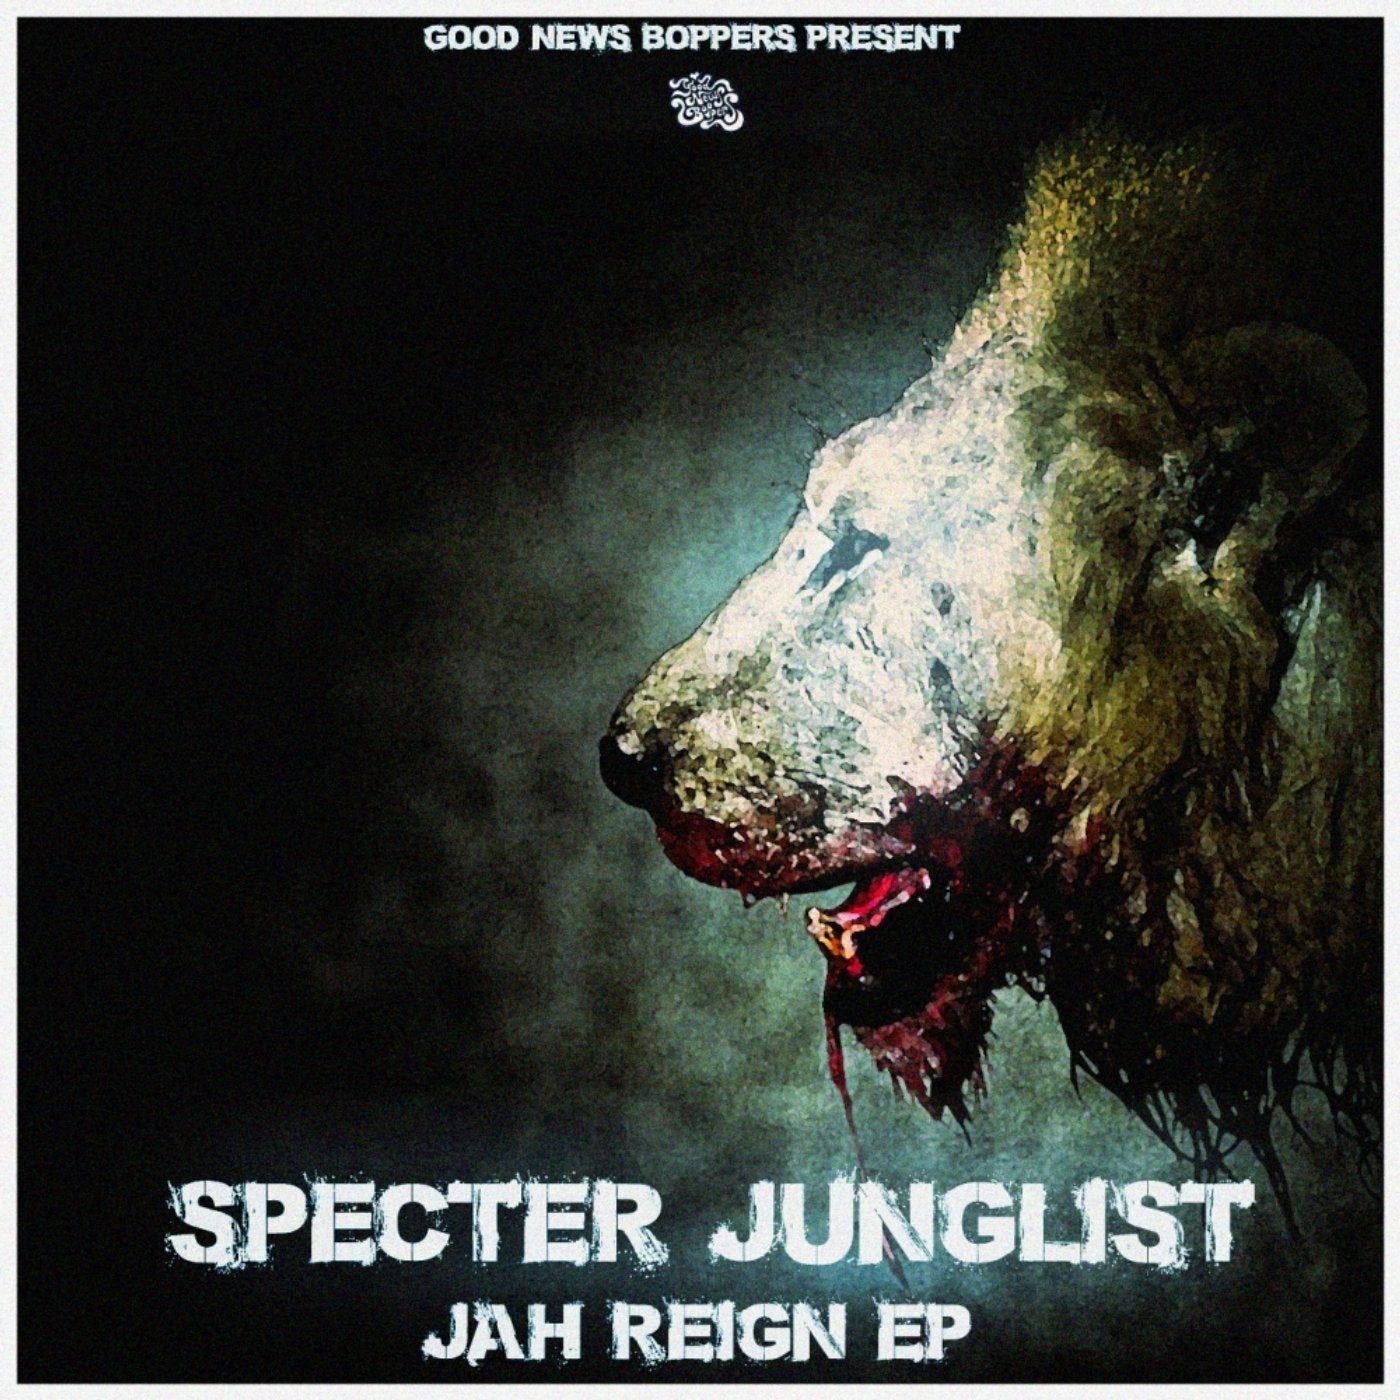 Jah Reign EP